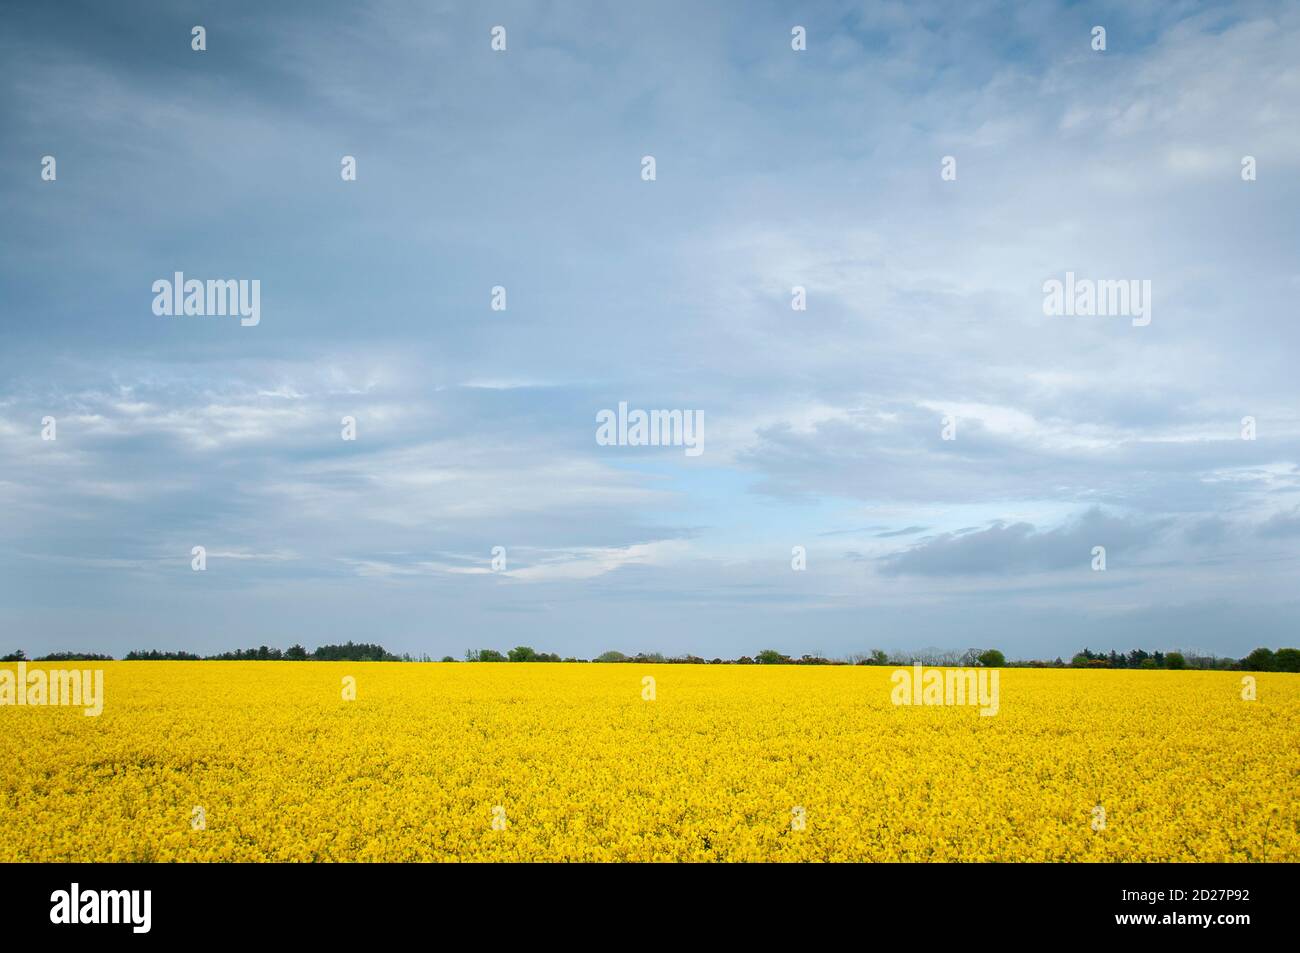 Fiore di colza – il fiore giallo del paesaggio irlandese Foto Stock